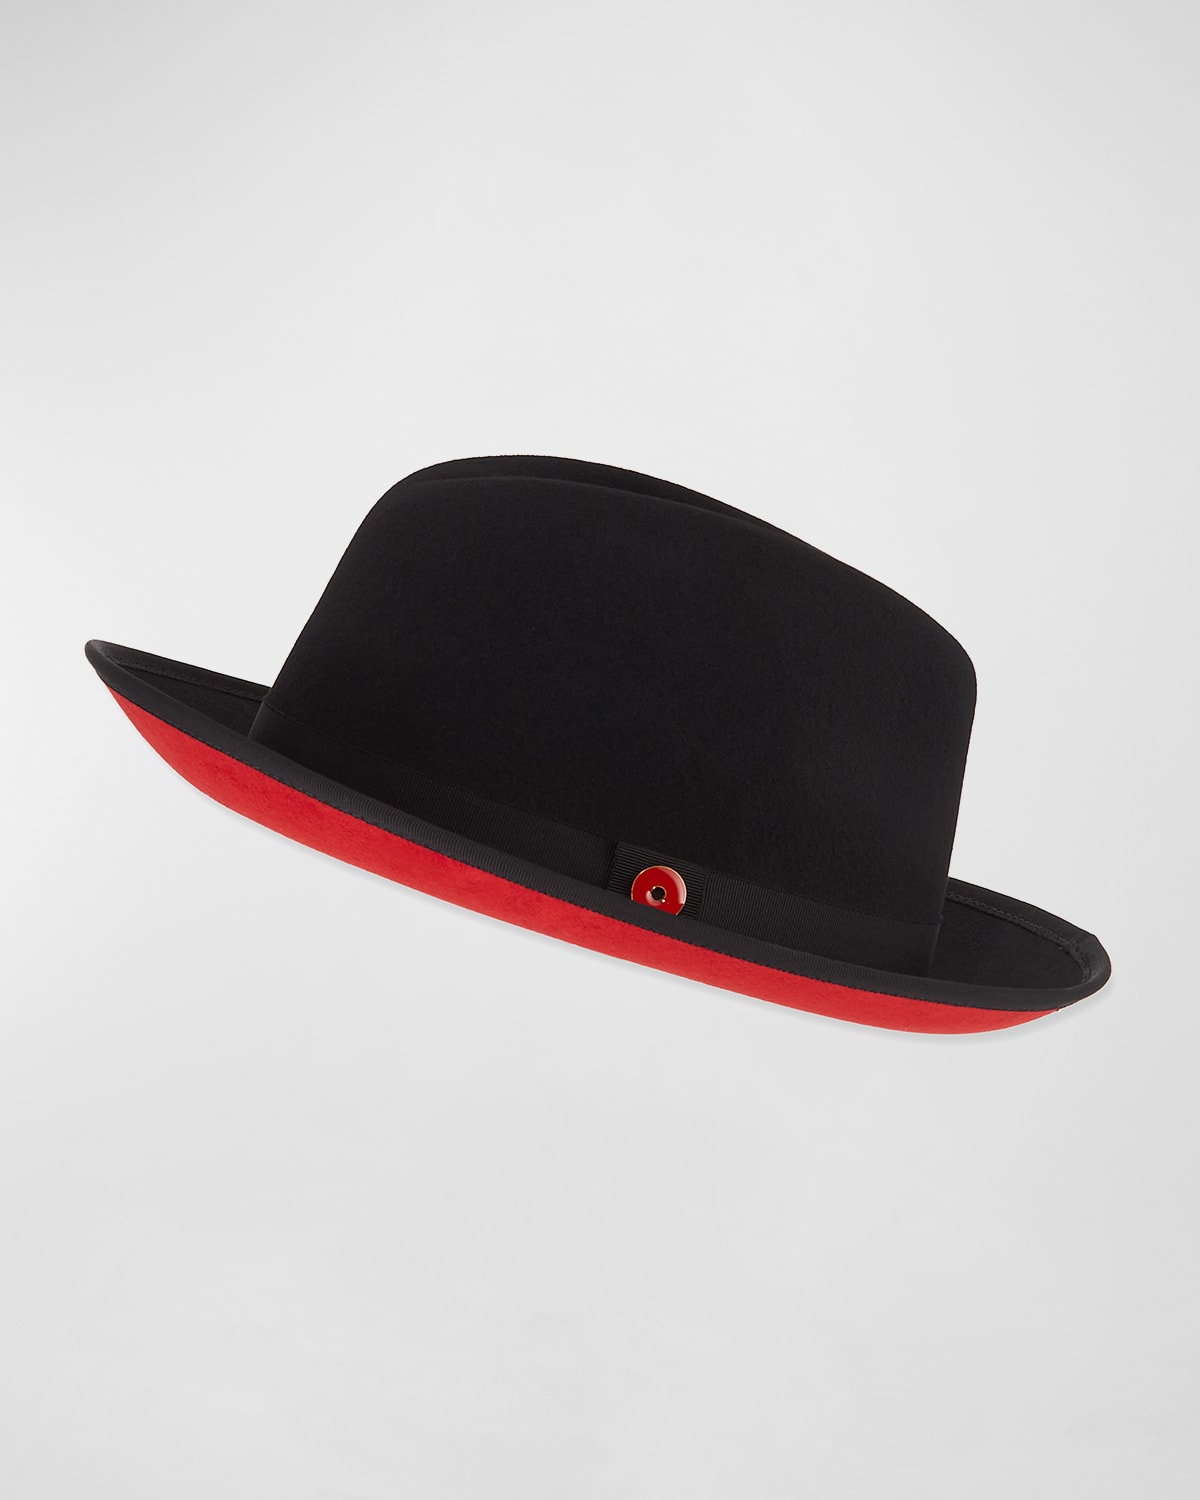 Keith James Men's King Red-Brim Wool Fedora Hat